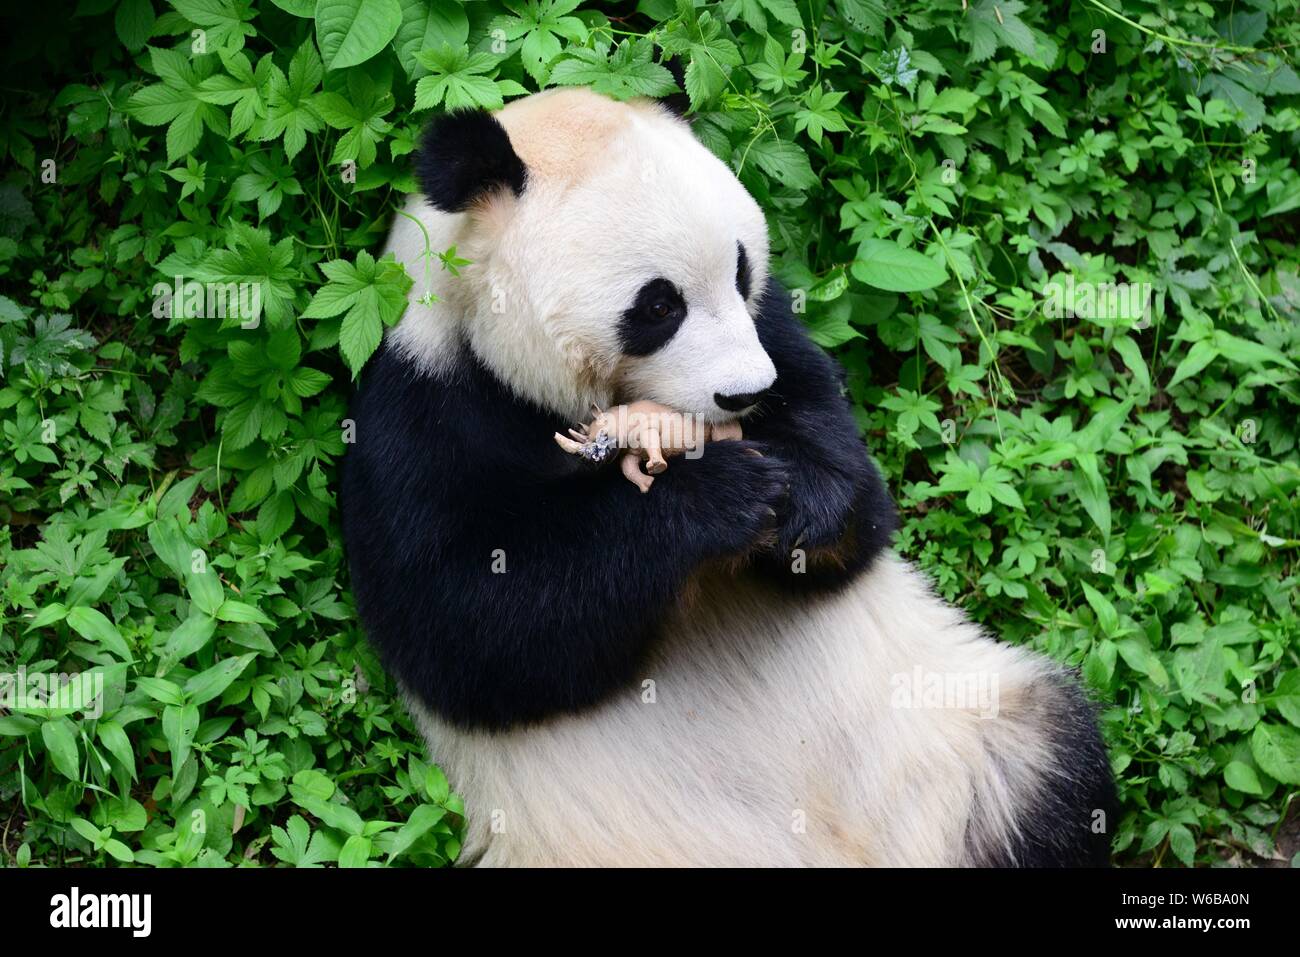 Un panda géant embrasse un rhino toy de zoo de Pékin à Beijing, Chine, 19 mai 2018. Un panda géant embrassé un jouet de rhinocéros dans les bras et l'embrassa à Beij Banque D'Images